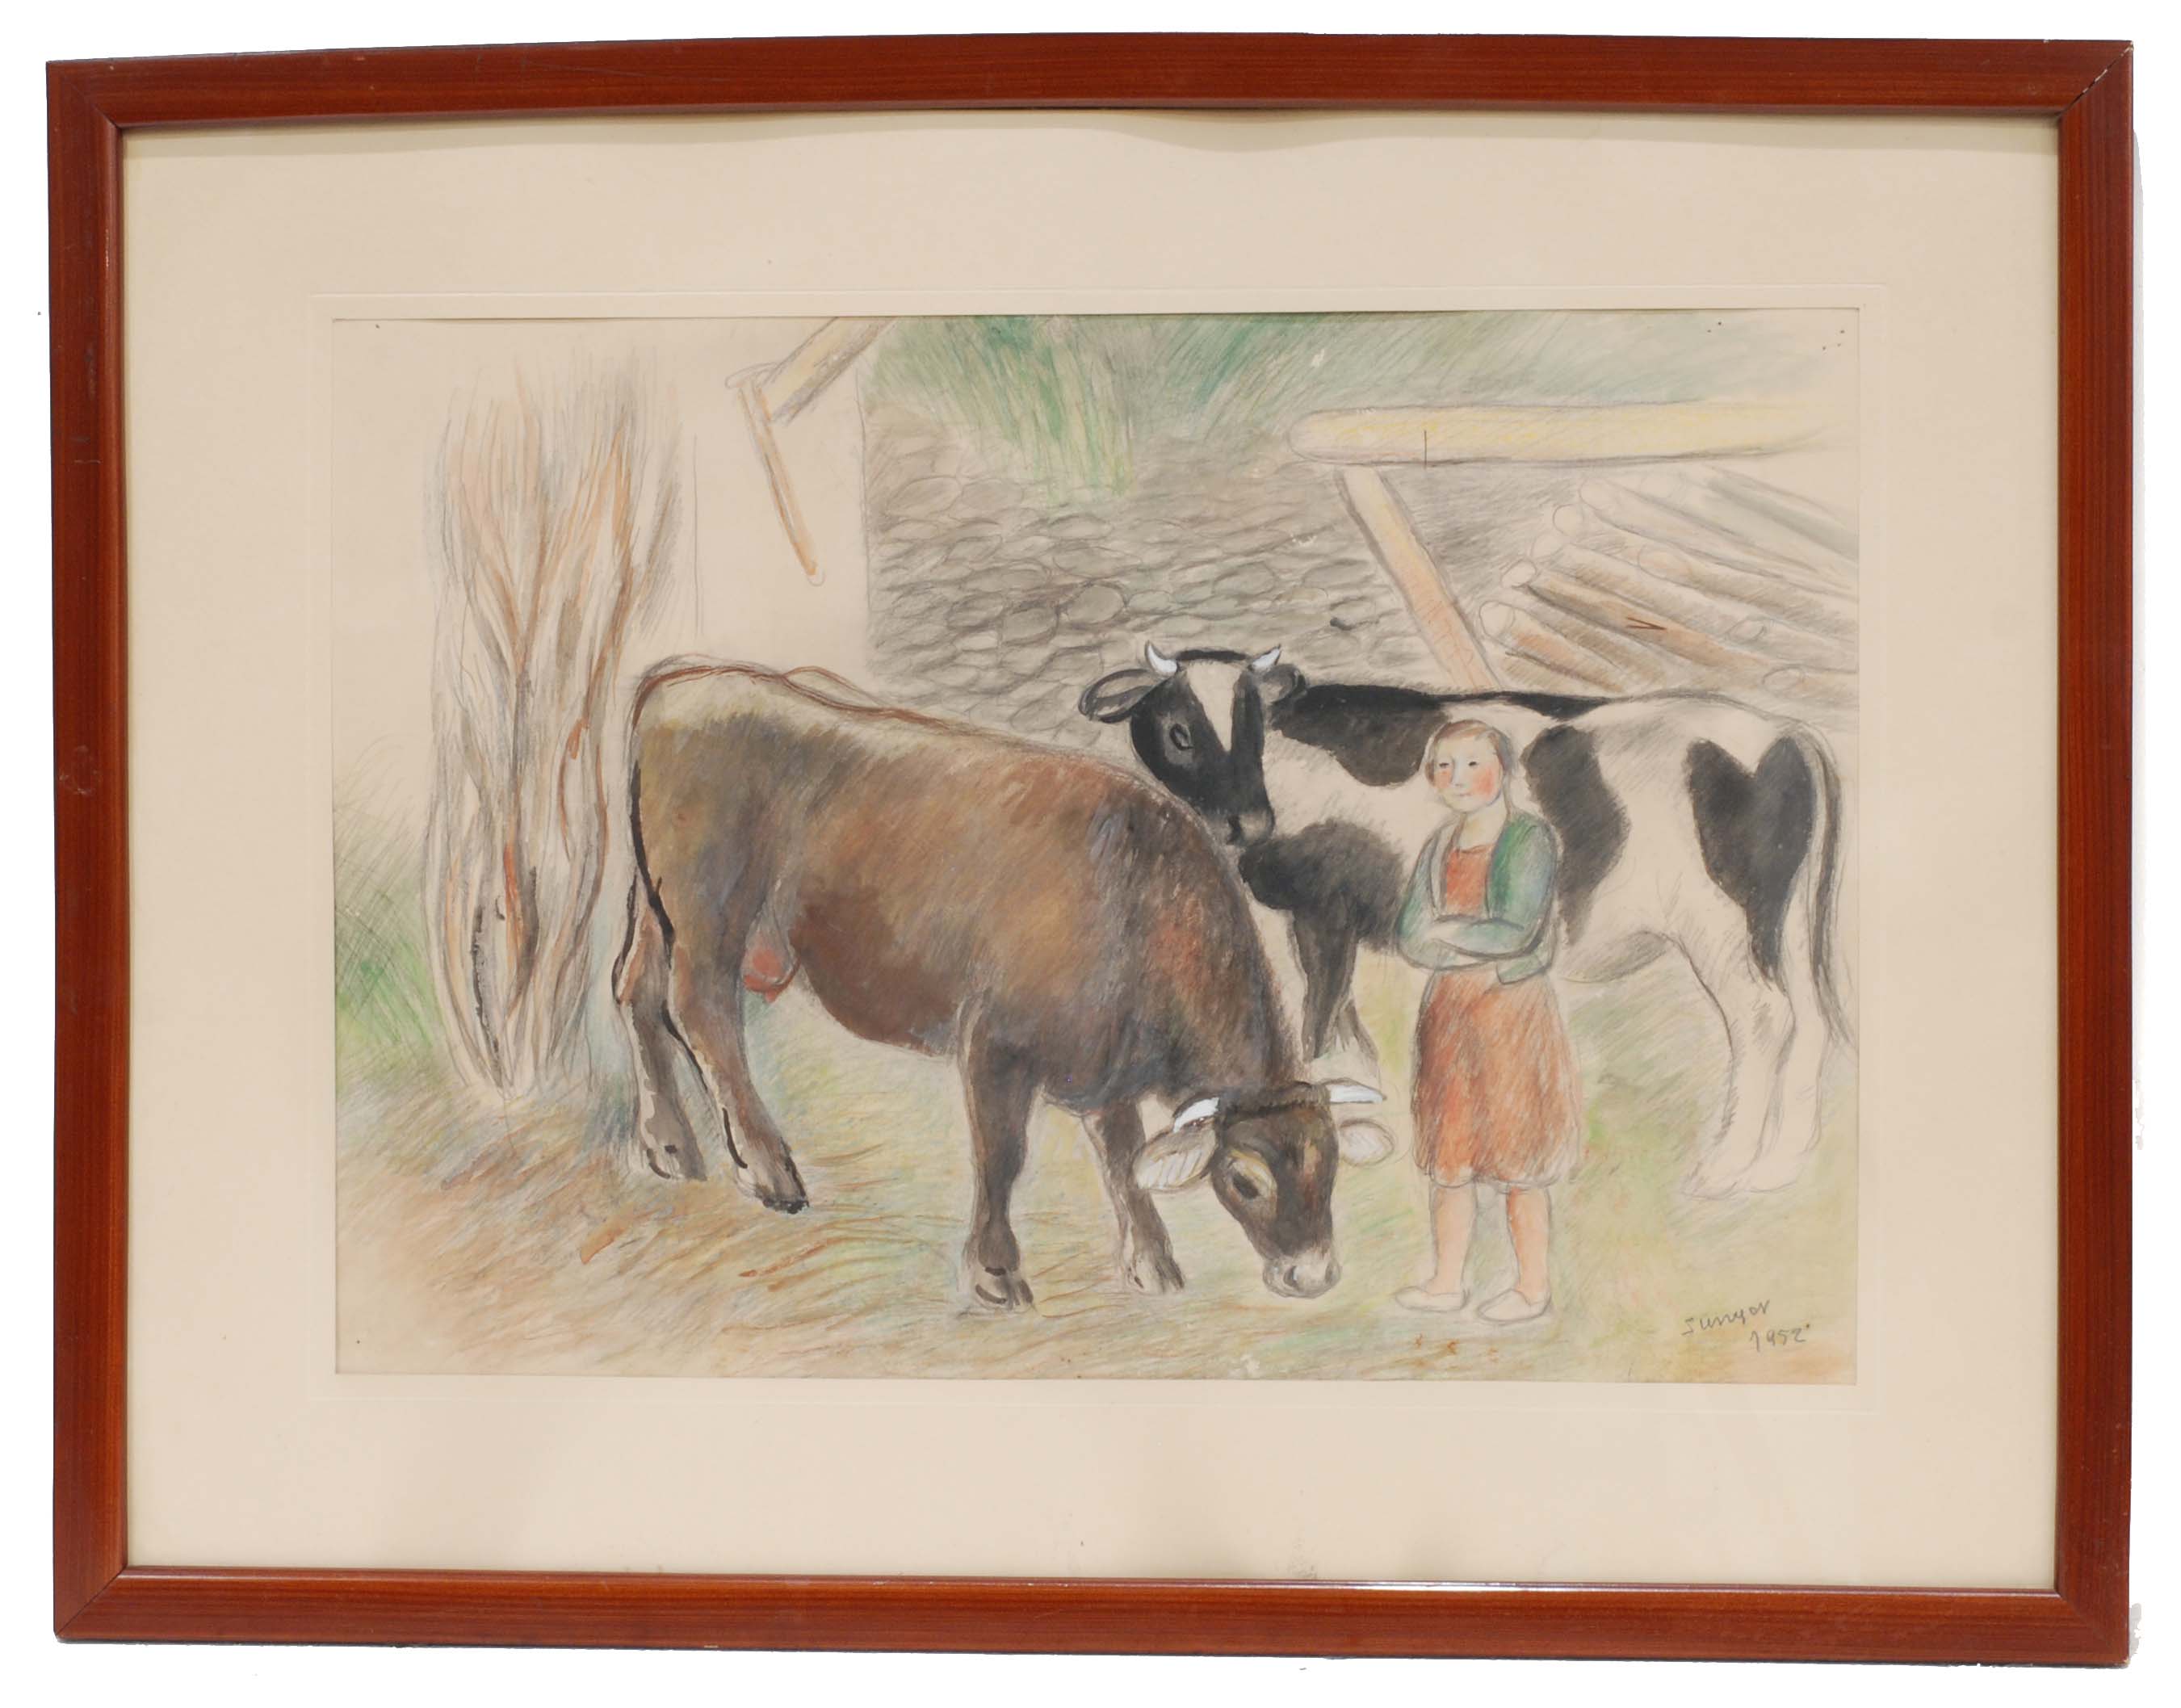 JOAQUIM SUNYER MIRÓ (1874-1956). "Vacas".